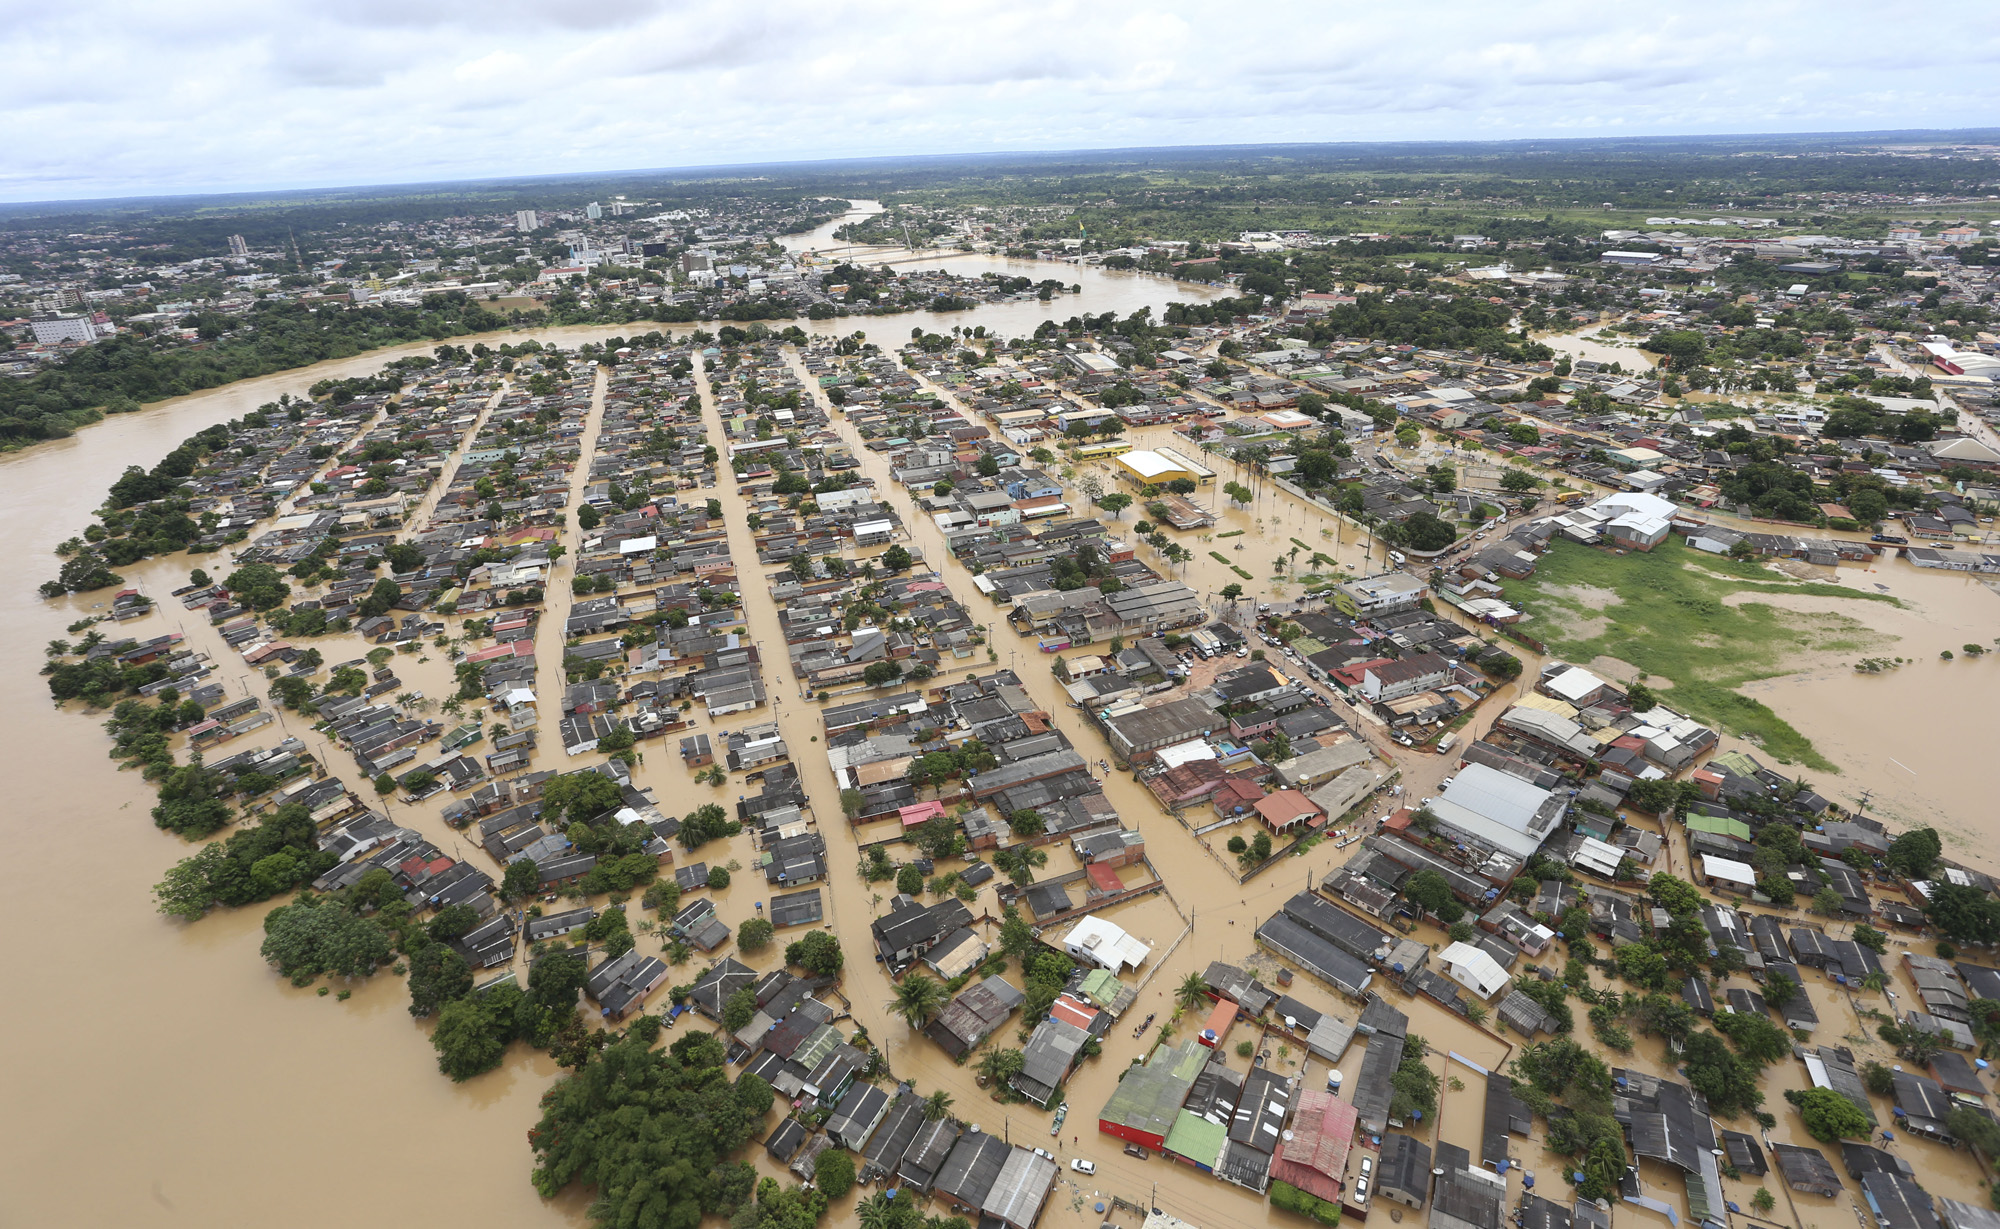 Rio Branco, município do Acre alagado devido às enchentes em 2015. Casas submersas num rio de lama.